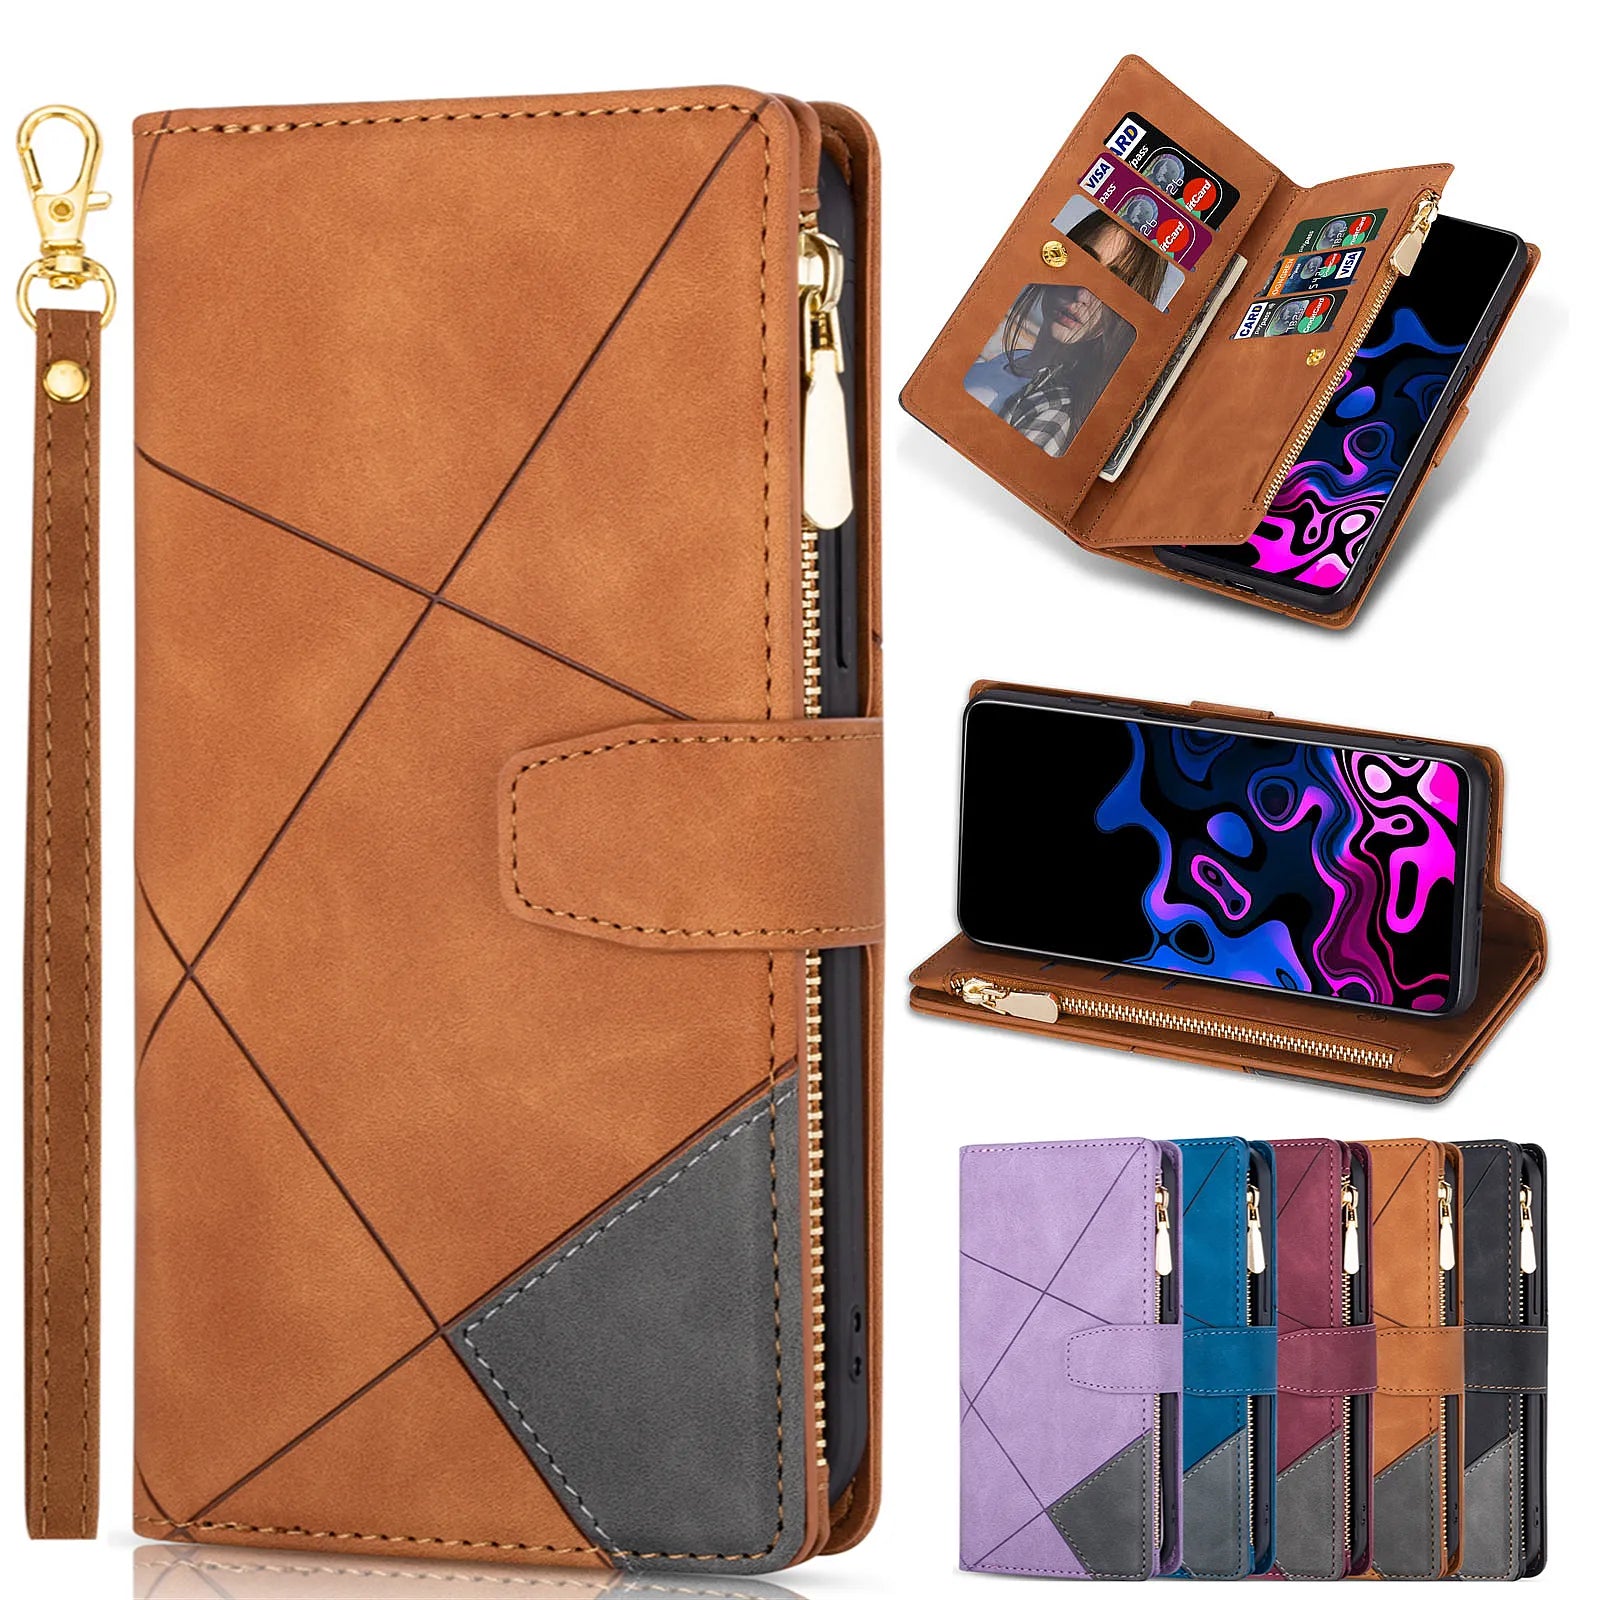 Leather Flip Wallet Galaxy S Case - DealJustDeal